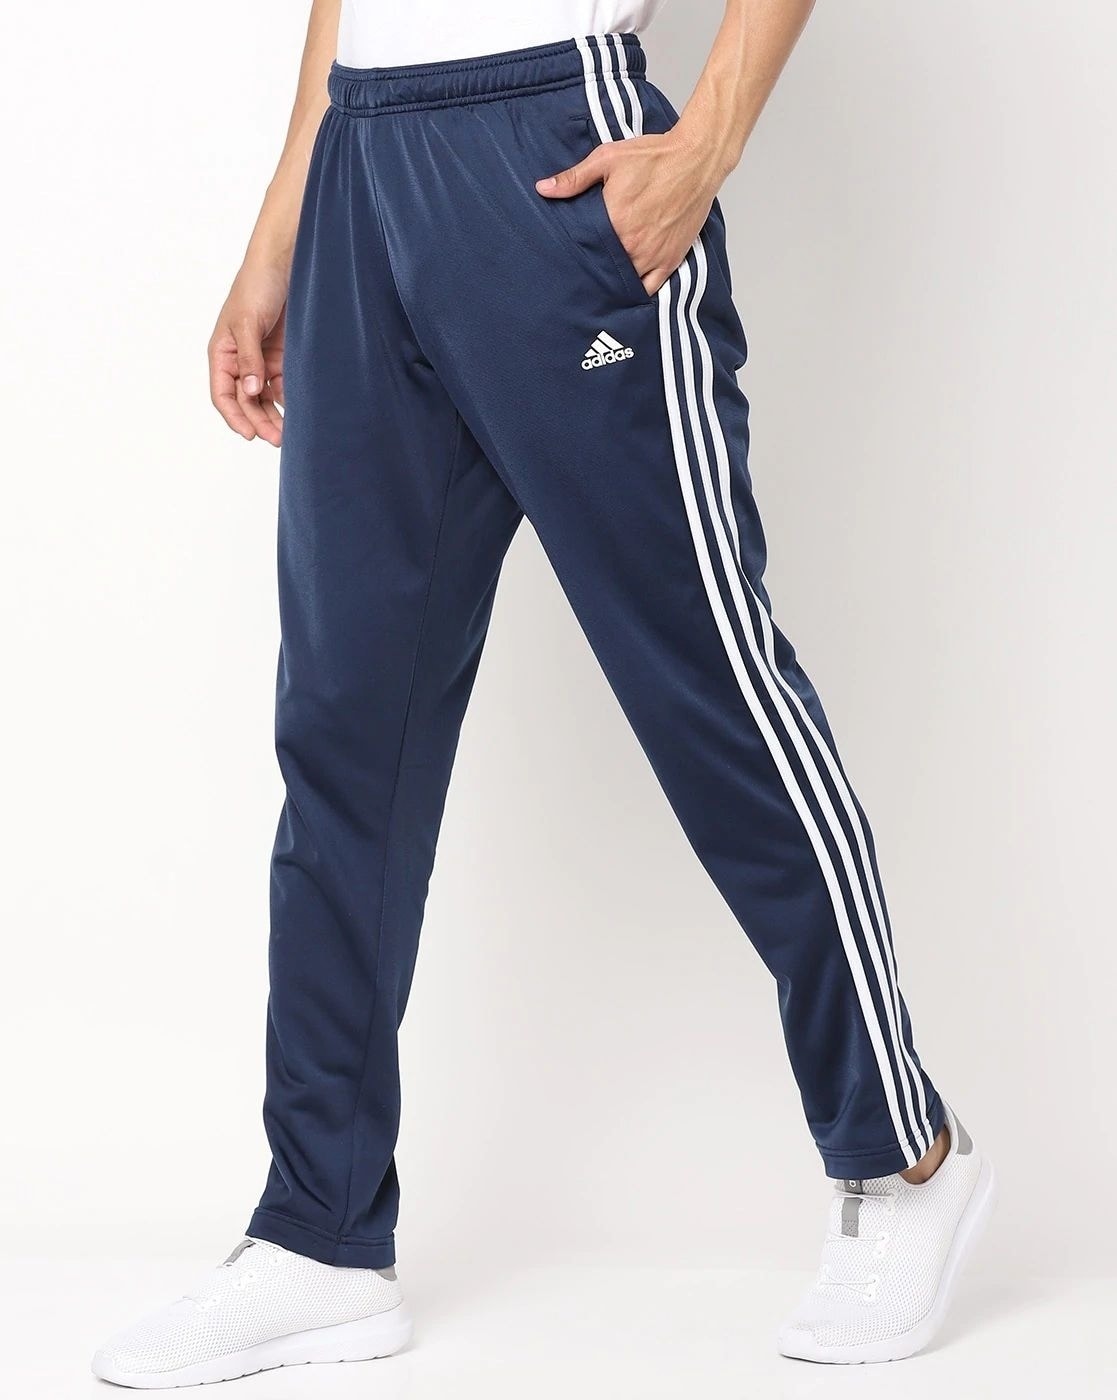 SPORTSWEAR & SHOES Adidas 3-STRIPES PANT - Jogging Pants - Men's - legmar -  Private Sport Shop